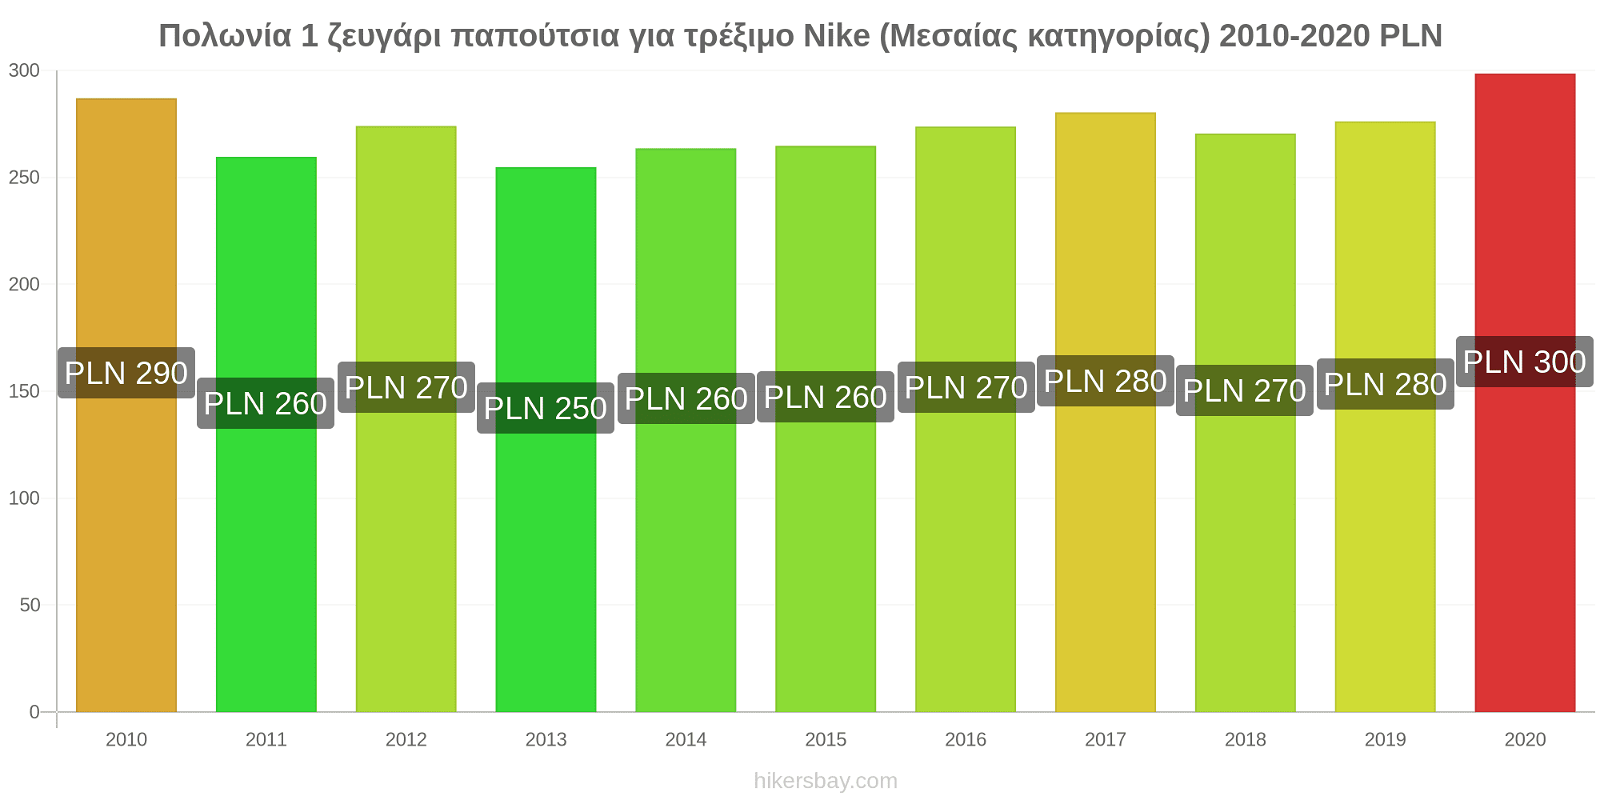 Πολωνία αλλαγές τιμών 1 ζευγάρι παπούτσια για τρέξιμο Nike (Μεσαίας κατηγορίας) hikersbay.com